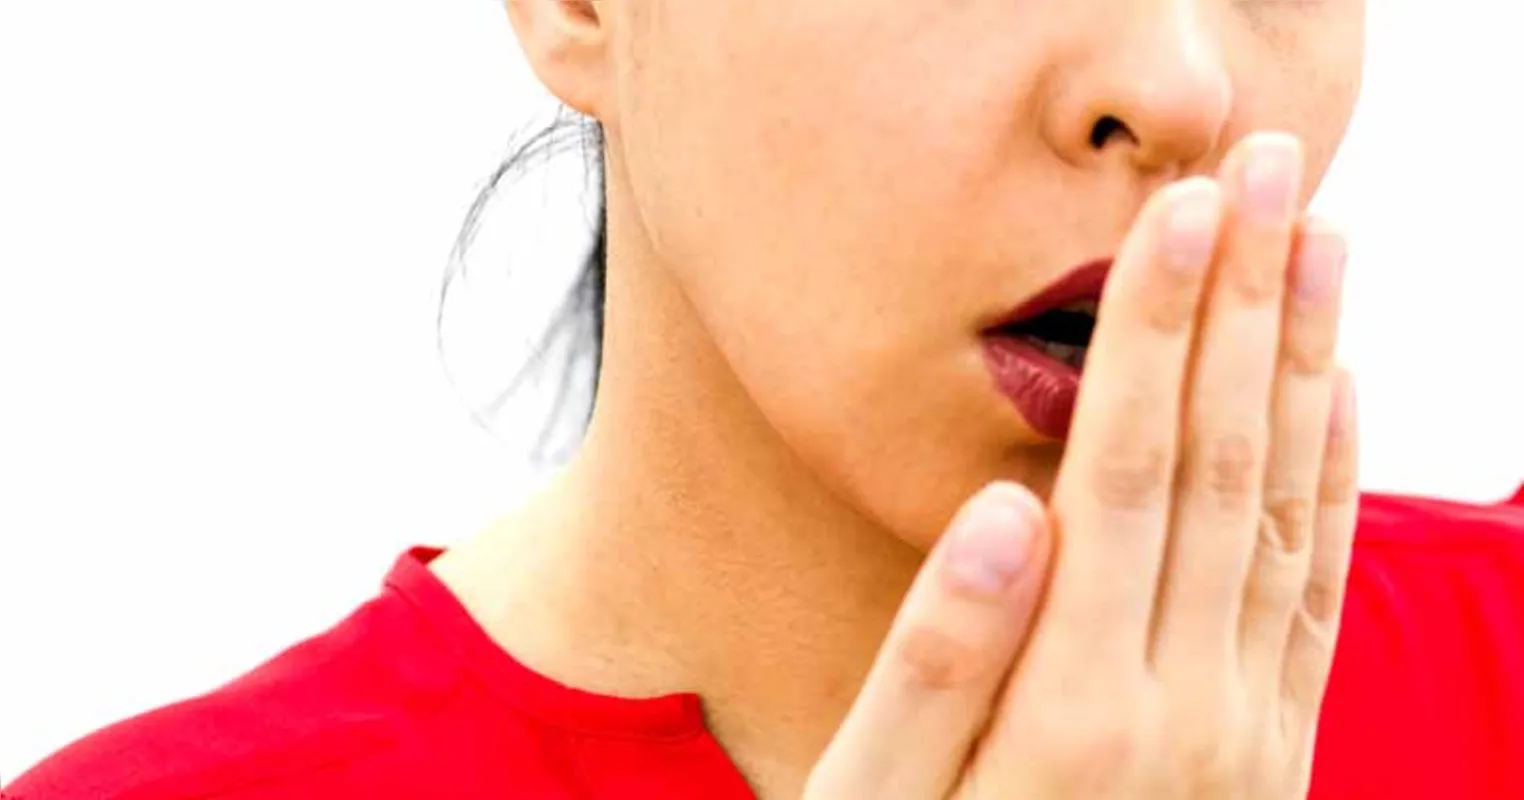 Segundo especialista, aproximadamente 90% das causas da halitose têm origem na boca